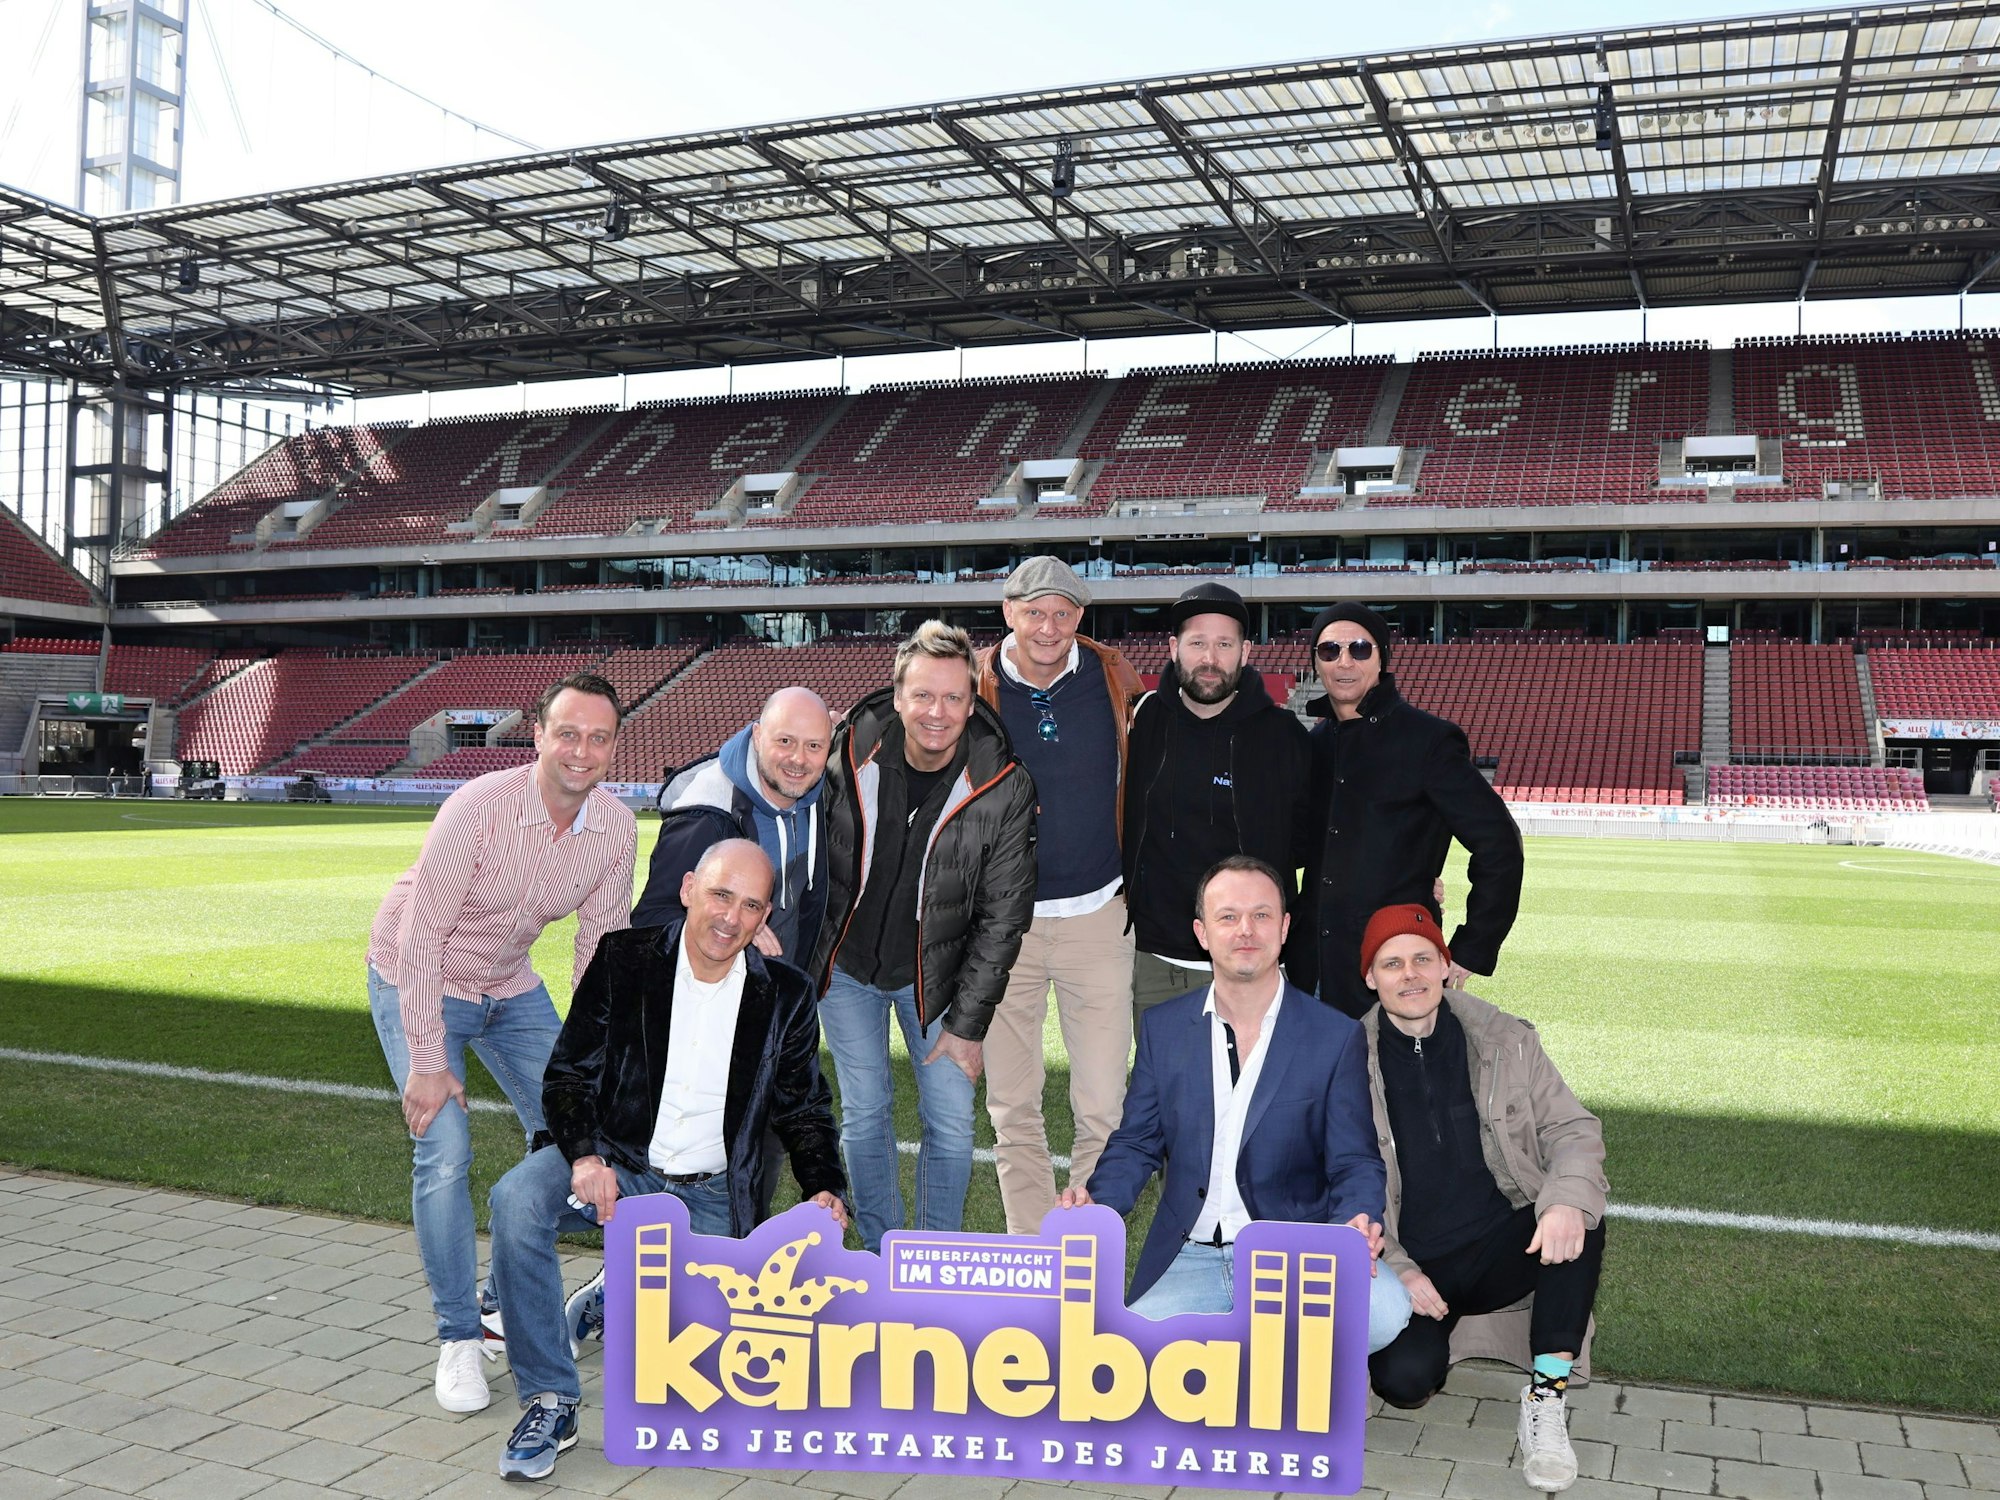 Künstler posieren im Stadion in Köln und schauen in die Kamera.